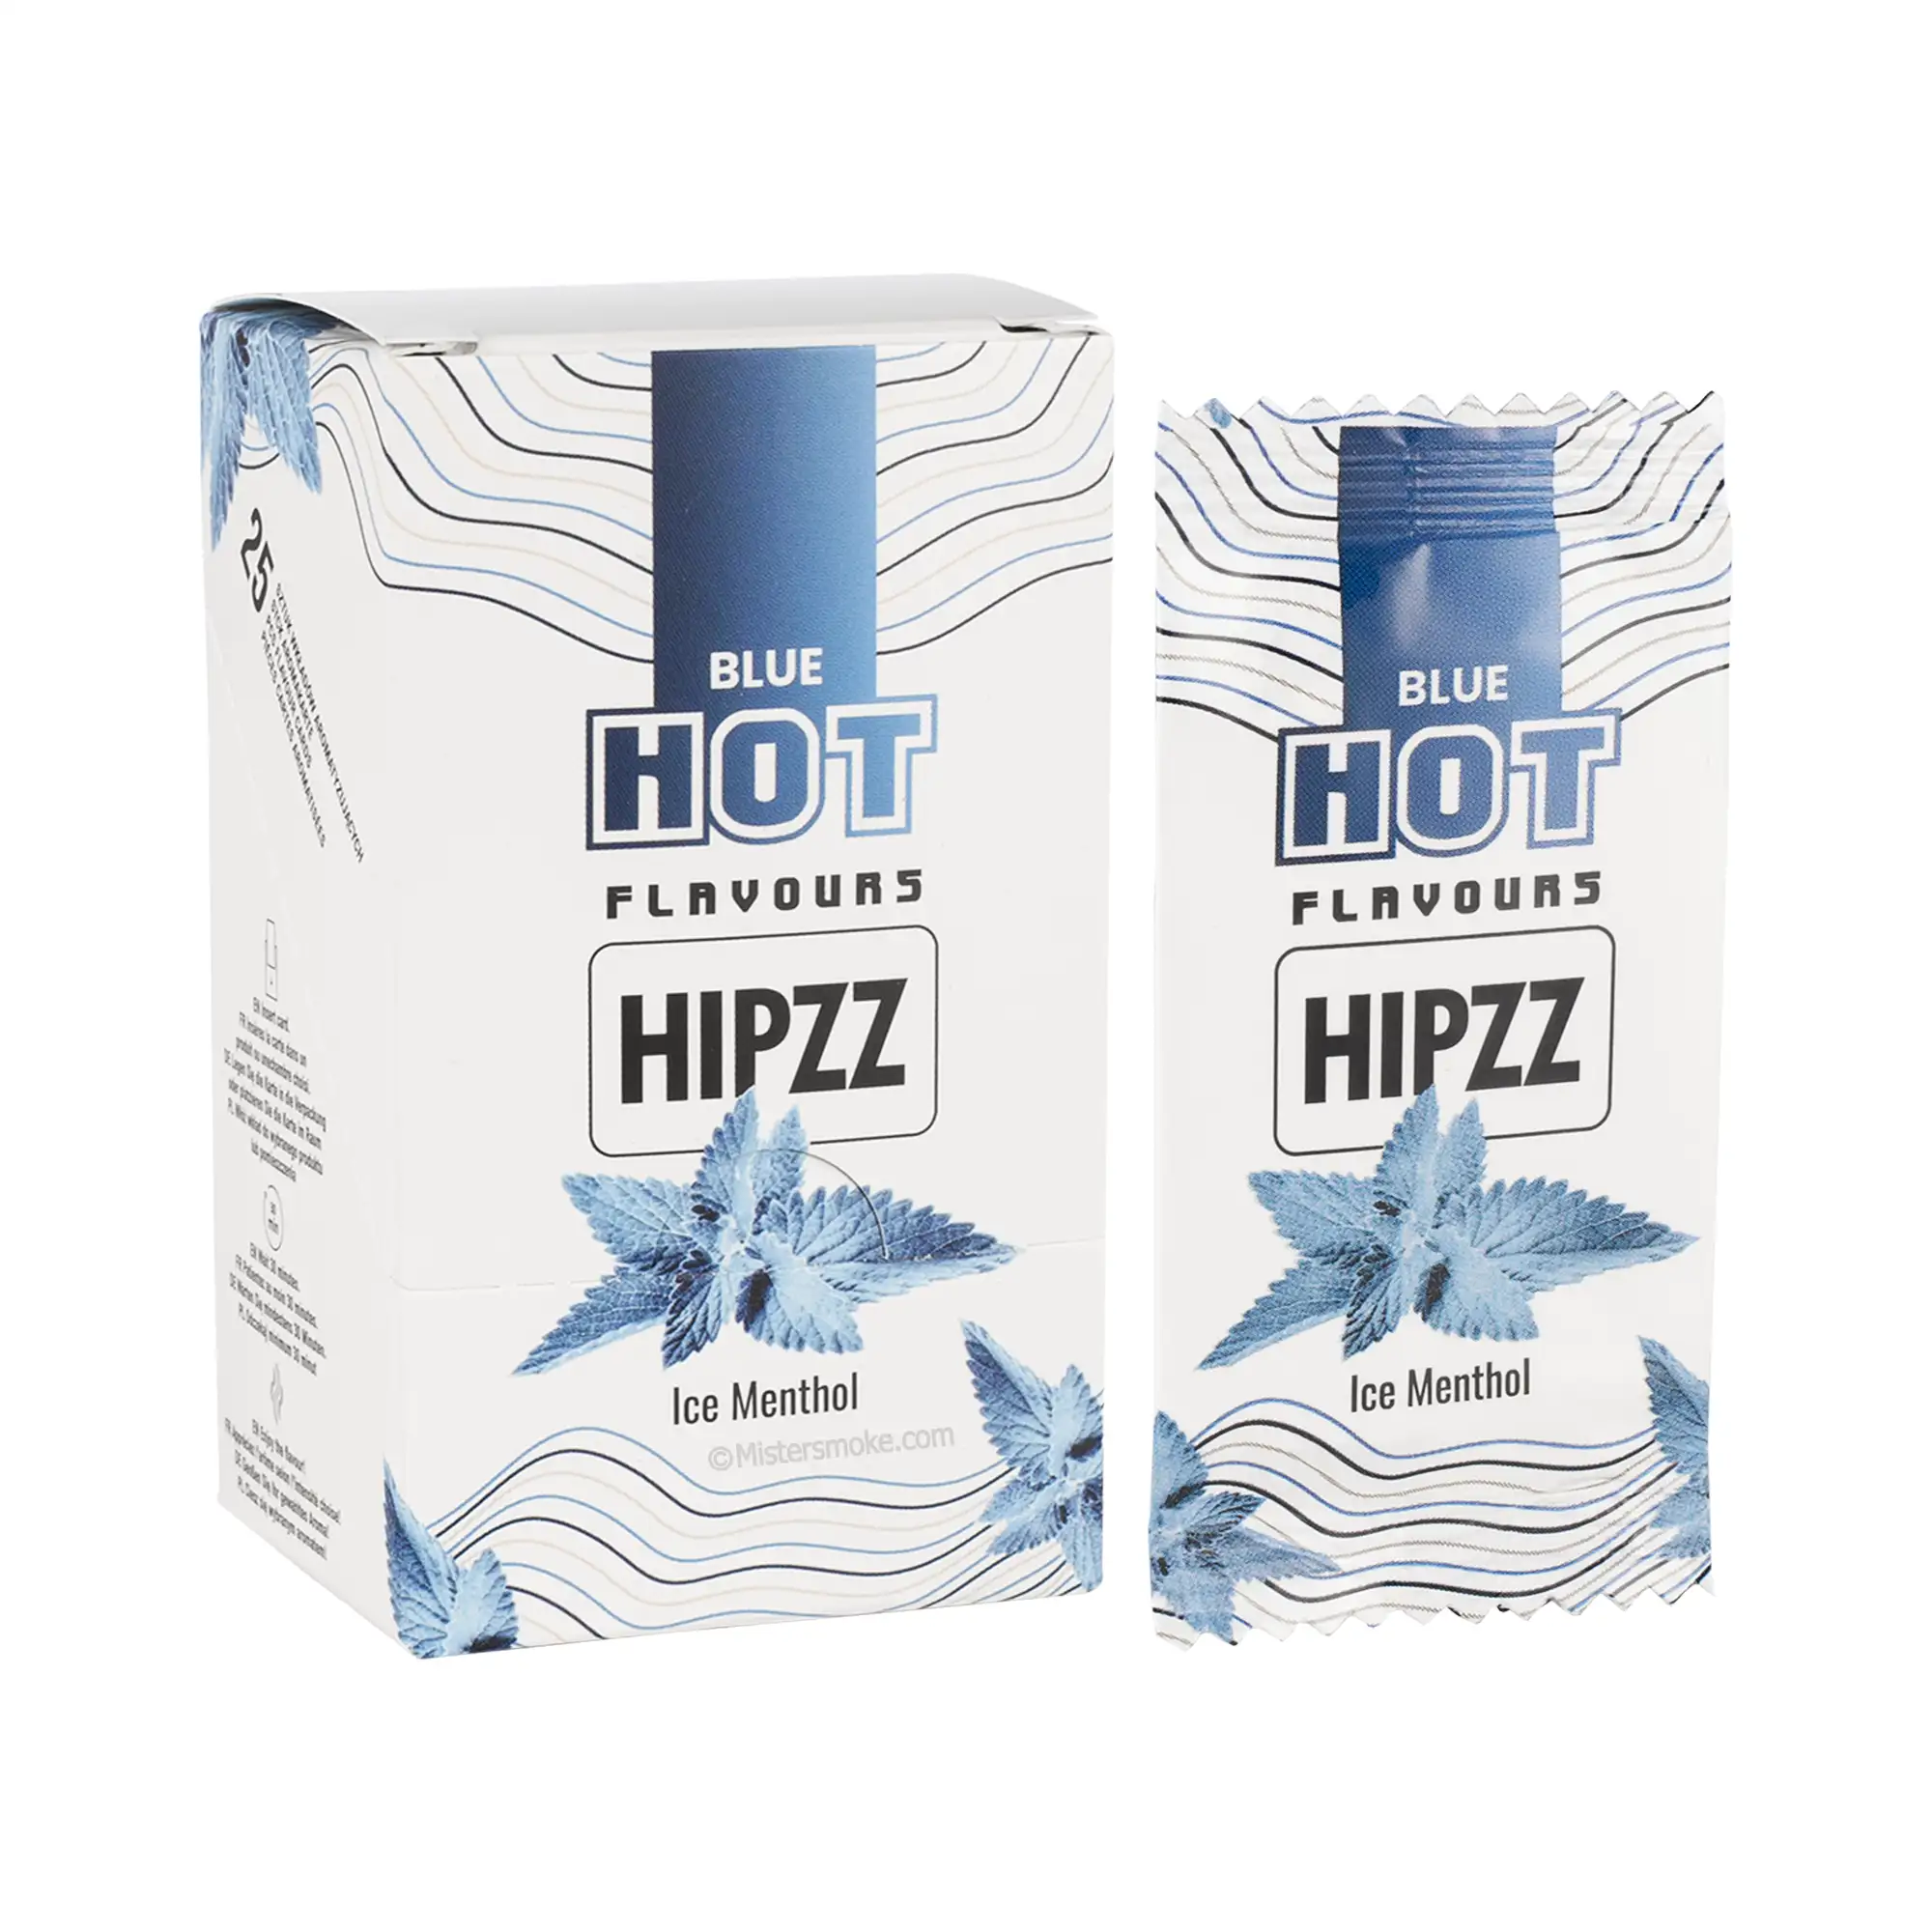 Boite de 25 cartes aromatiques Ice menthol - Hipzz - Mistersmoke